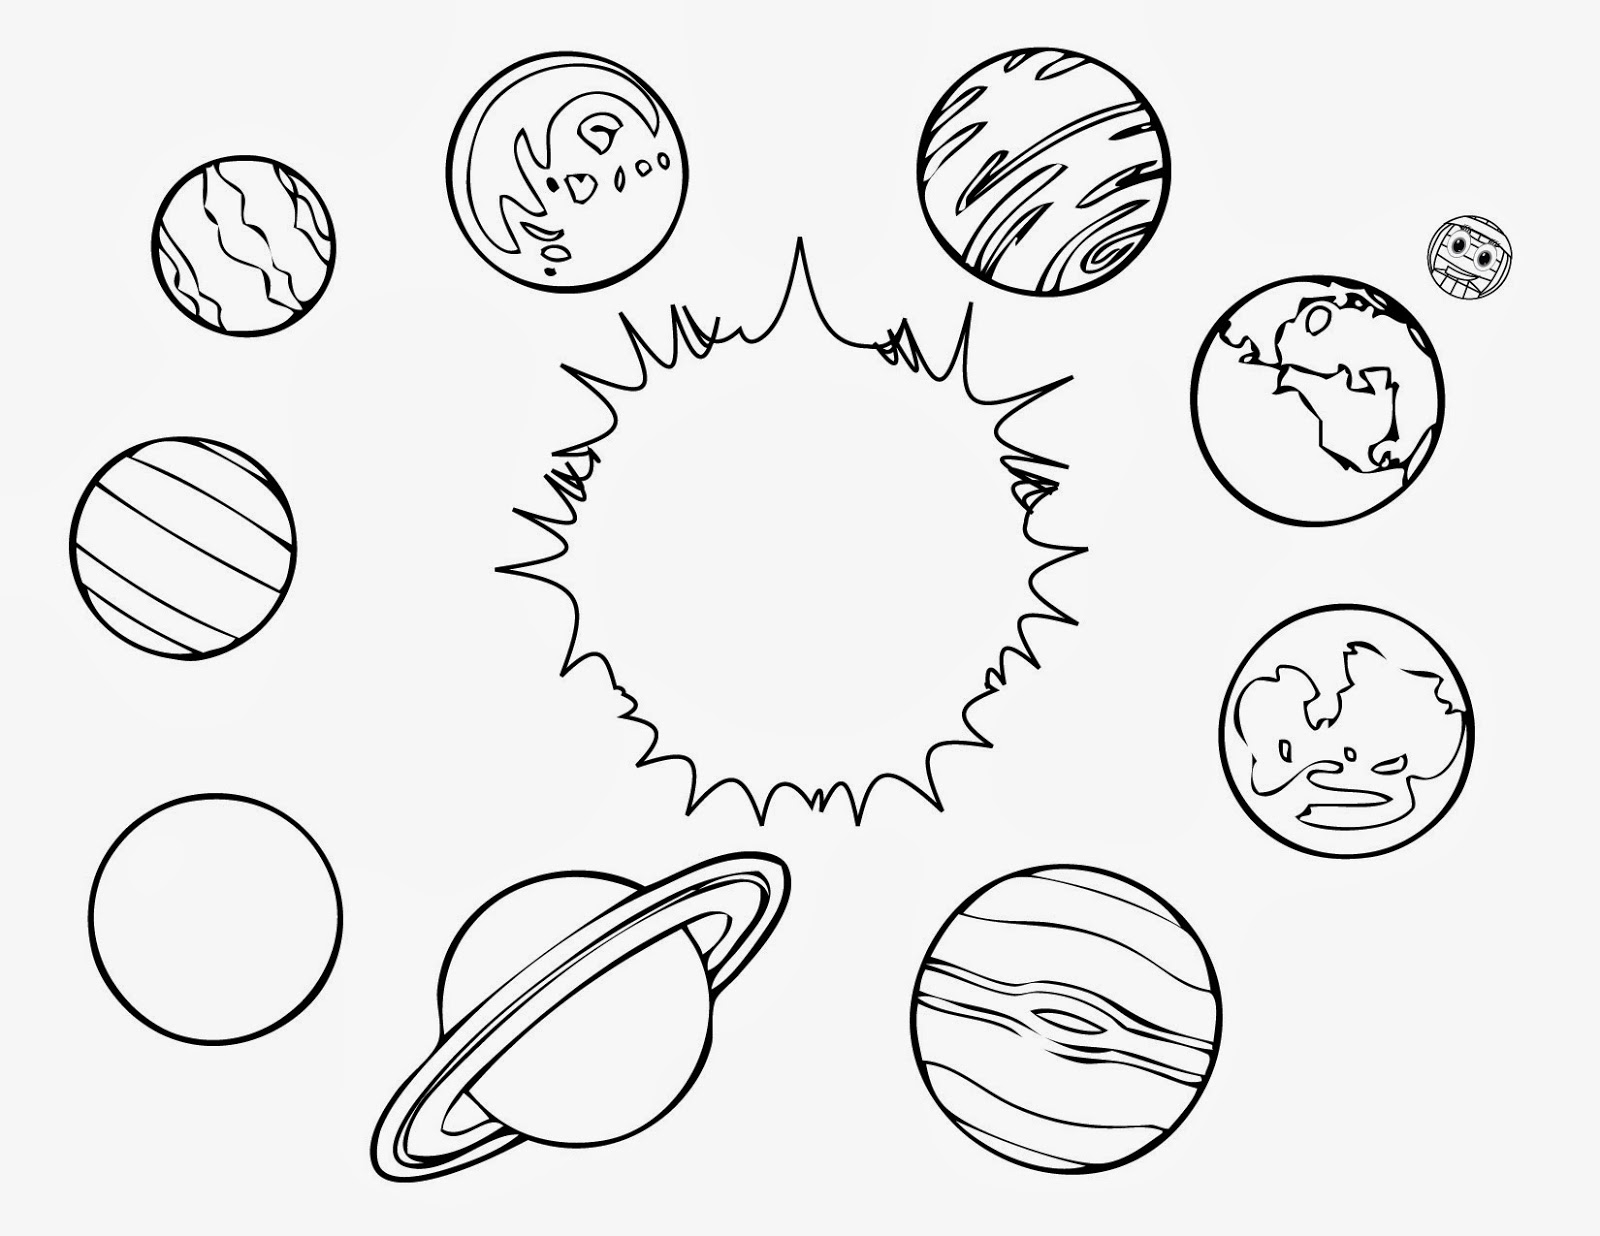 Планеты солнечной системы: космические раскраски для детей